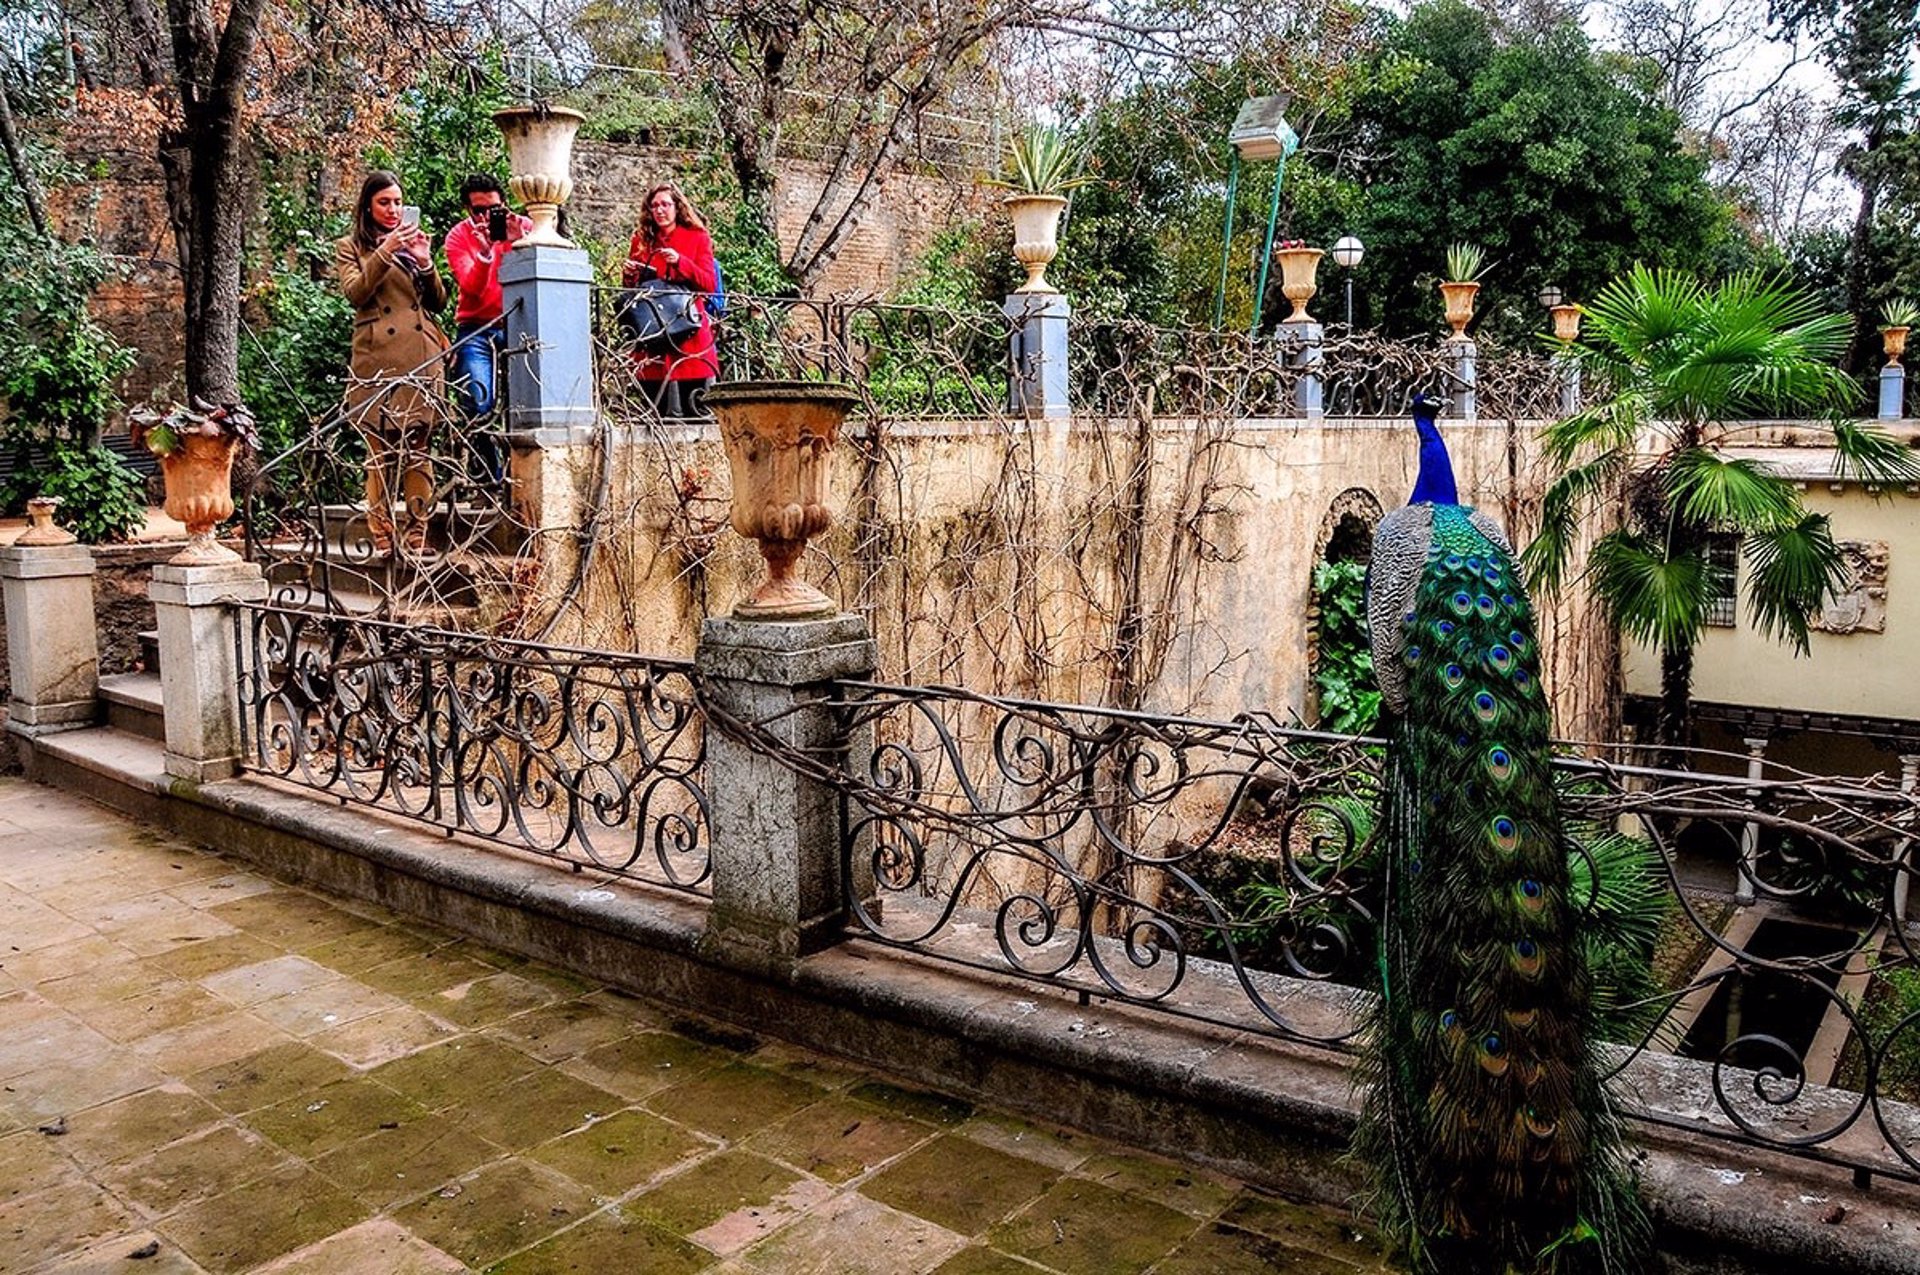 La Fundación AguaGranada oferta nuevas rutas guiadas por el entorno de la Alhambra